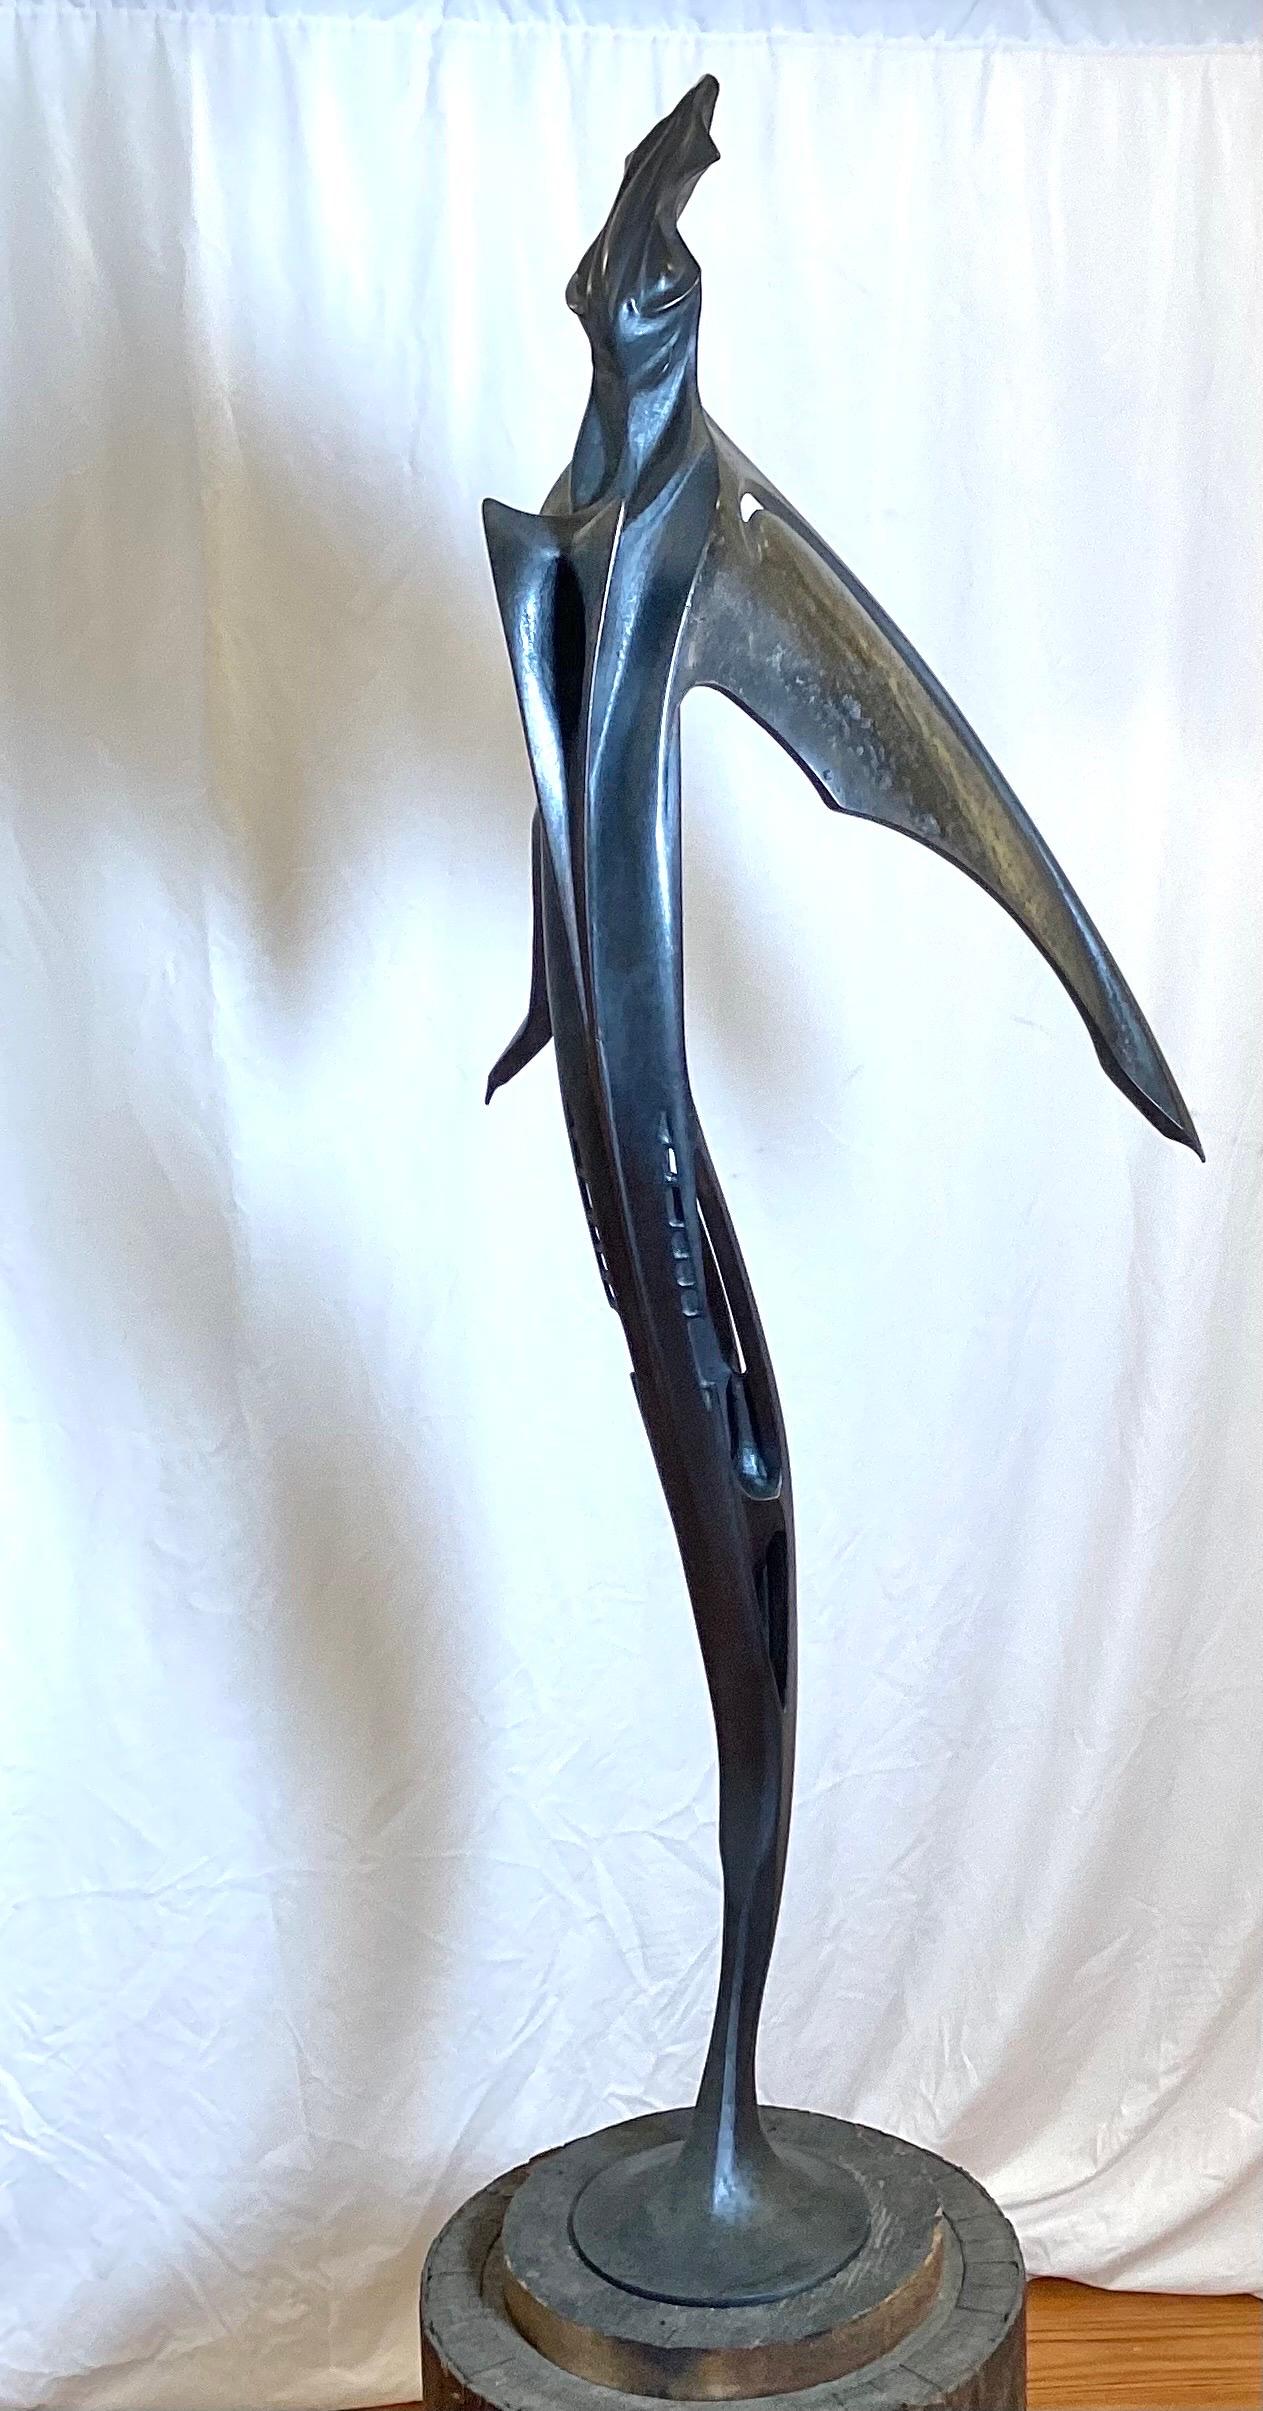 Il s'agit d'une sculpture unique en son genre, haute et élancée, en bronze patiné, réalisée par Lawrence Welker IV.  Il pivote sur sa base pour pouvoir être vu de tous les côtés.  51 pouces de haut, signé près de la base. 

Lawrence Welker IV était 